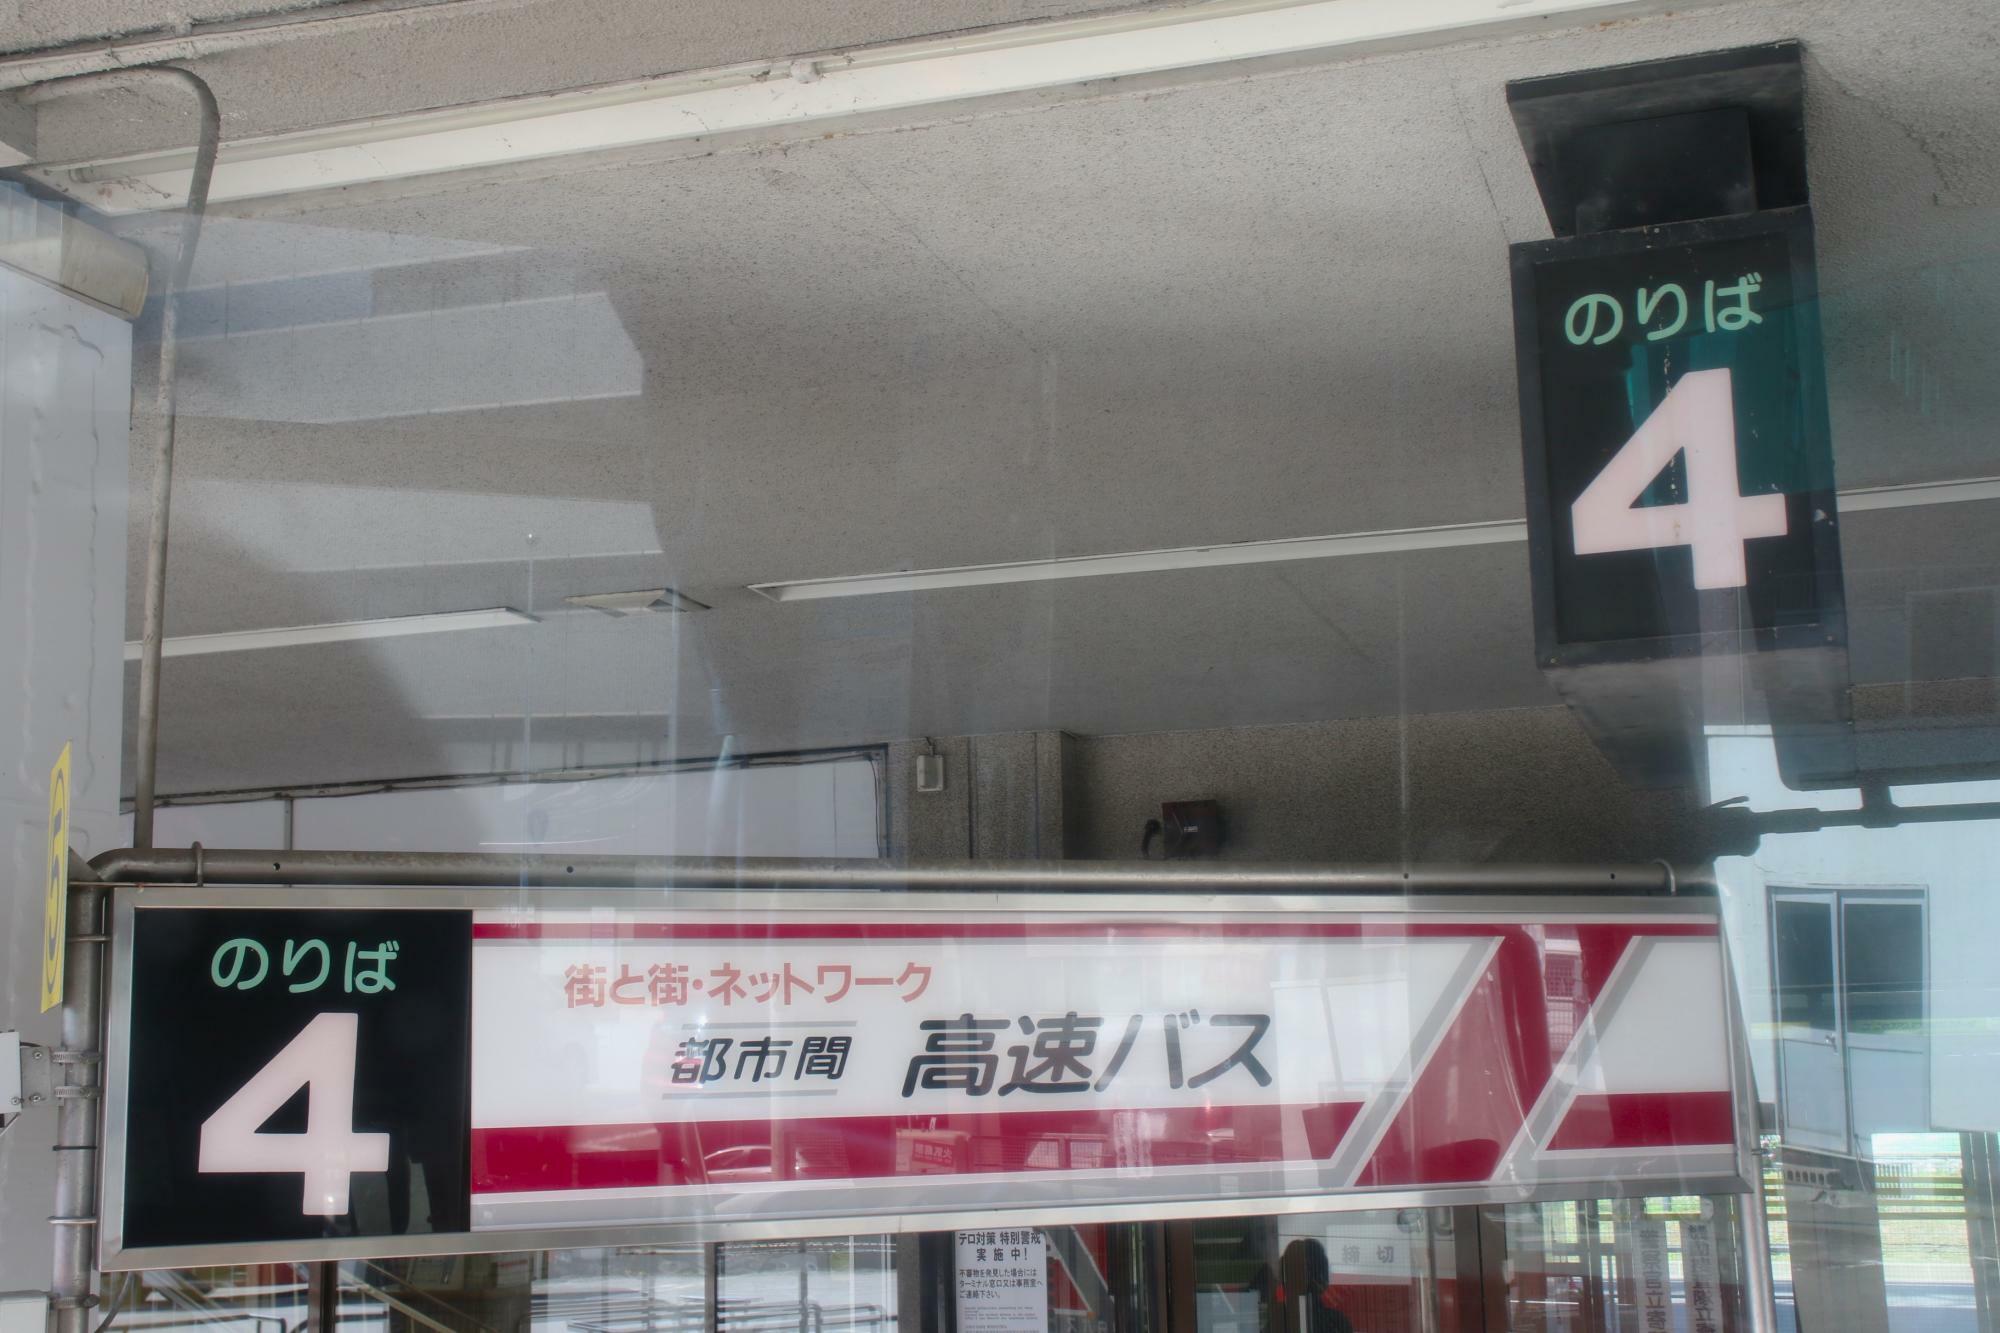 中央バス札幌ターミナルでは4番のりば発着